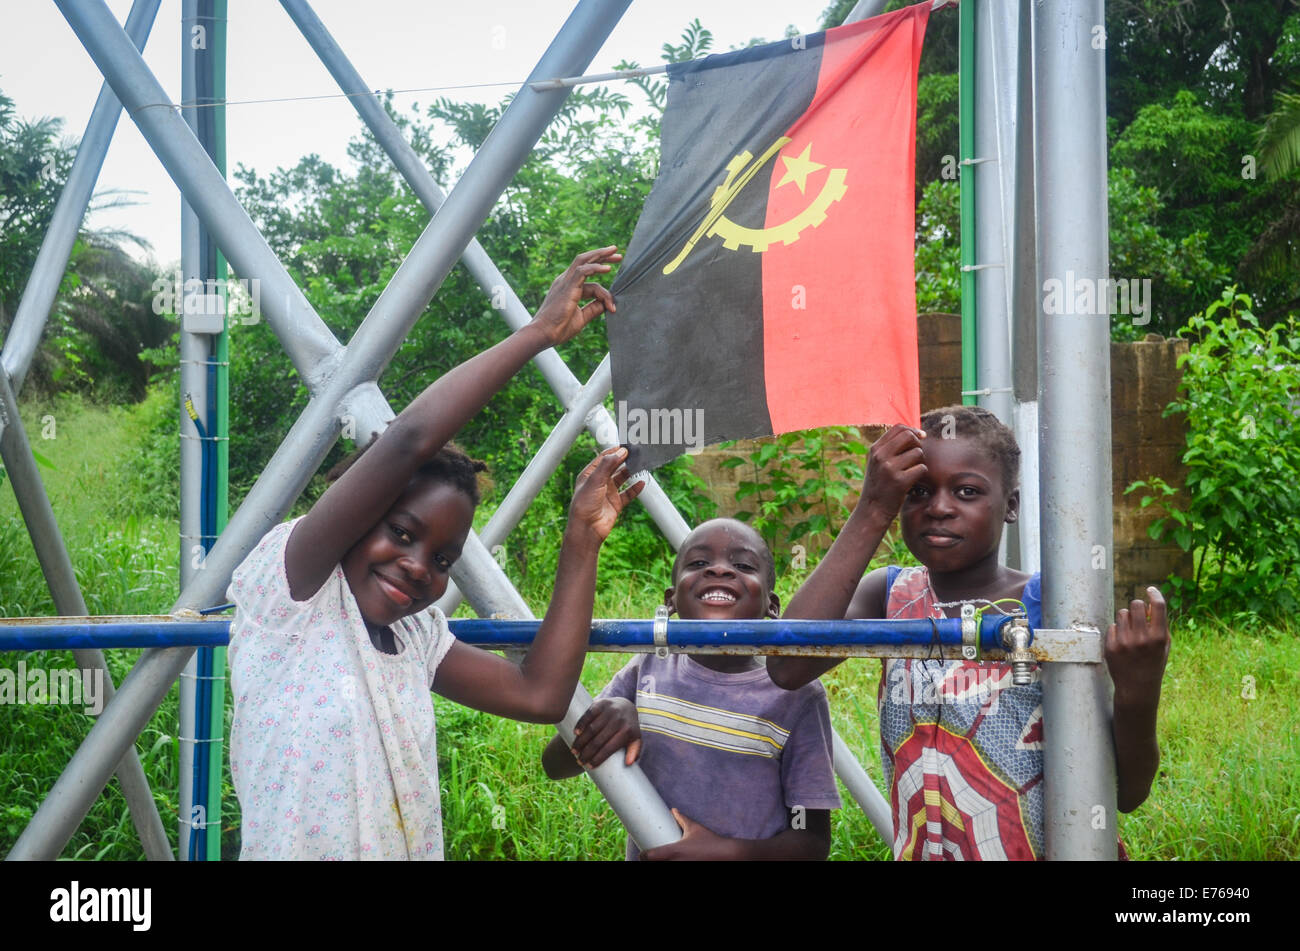 Los niños angoleños sonriente posando con la bandera de Angola Foto de stock